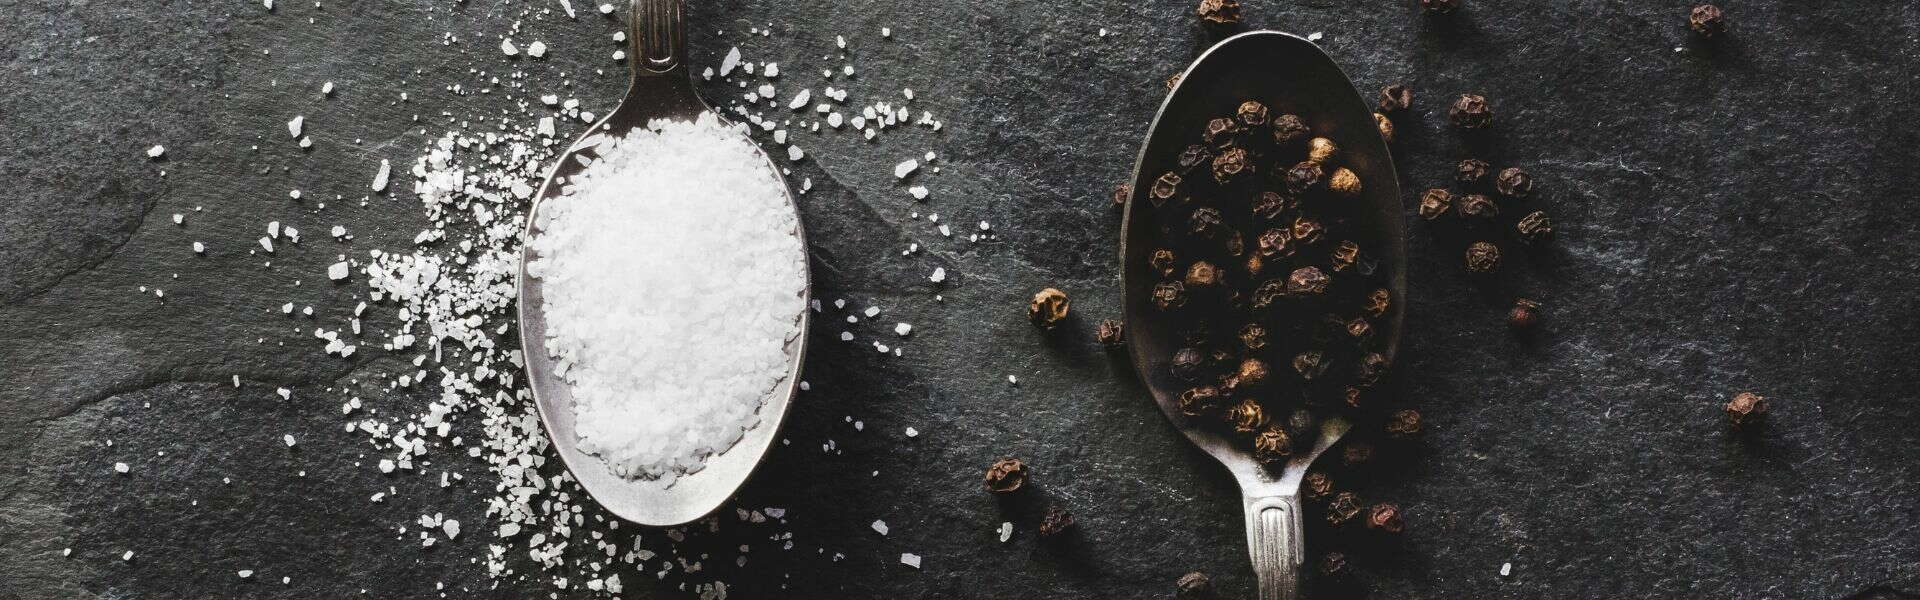 Wozu dient Salz in der Ernährung?